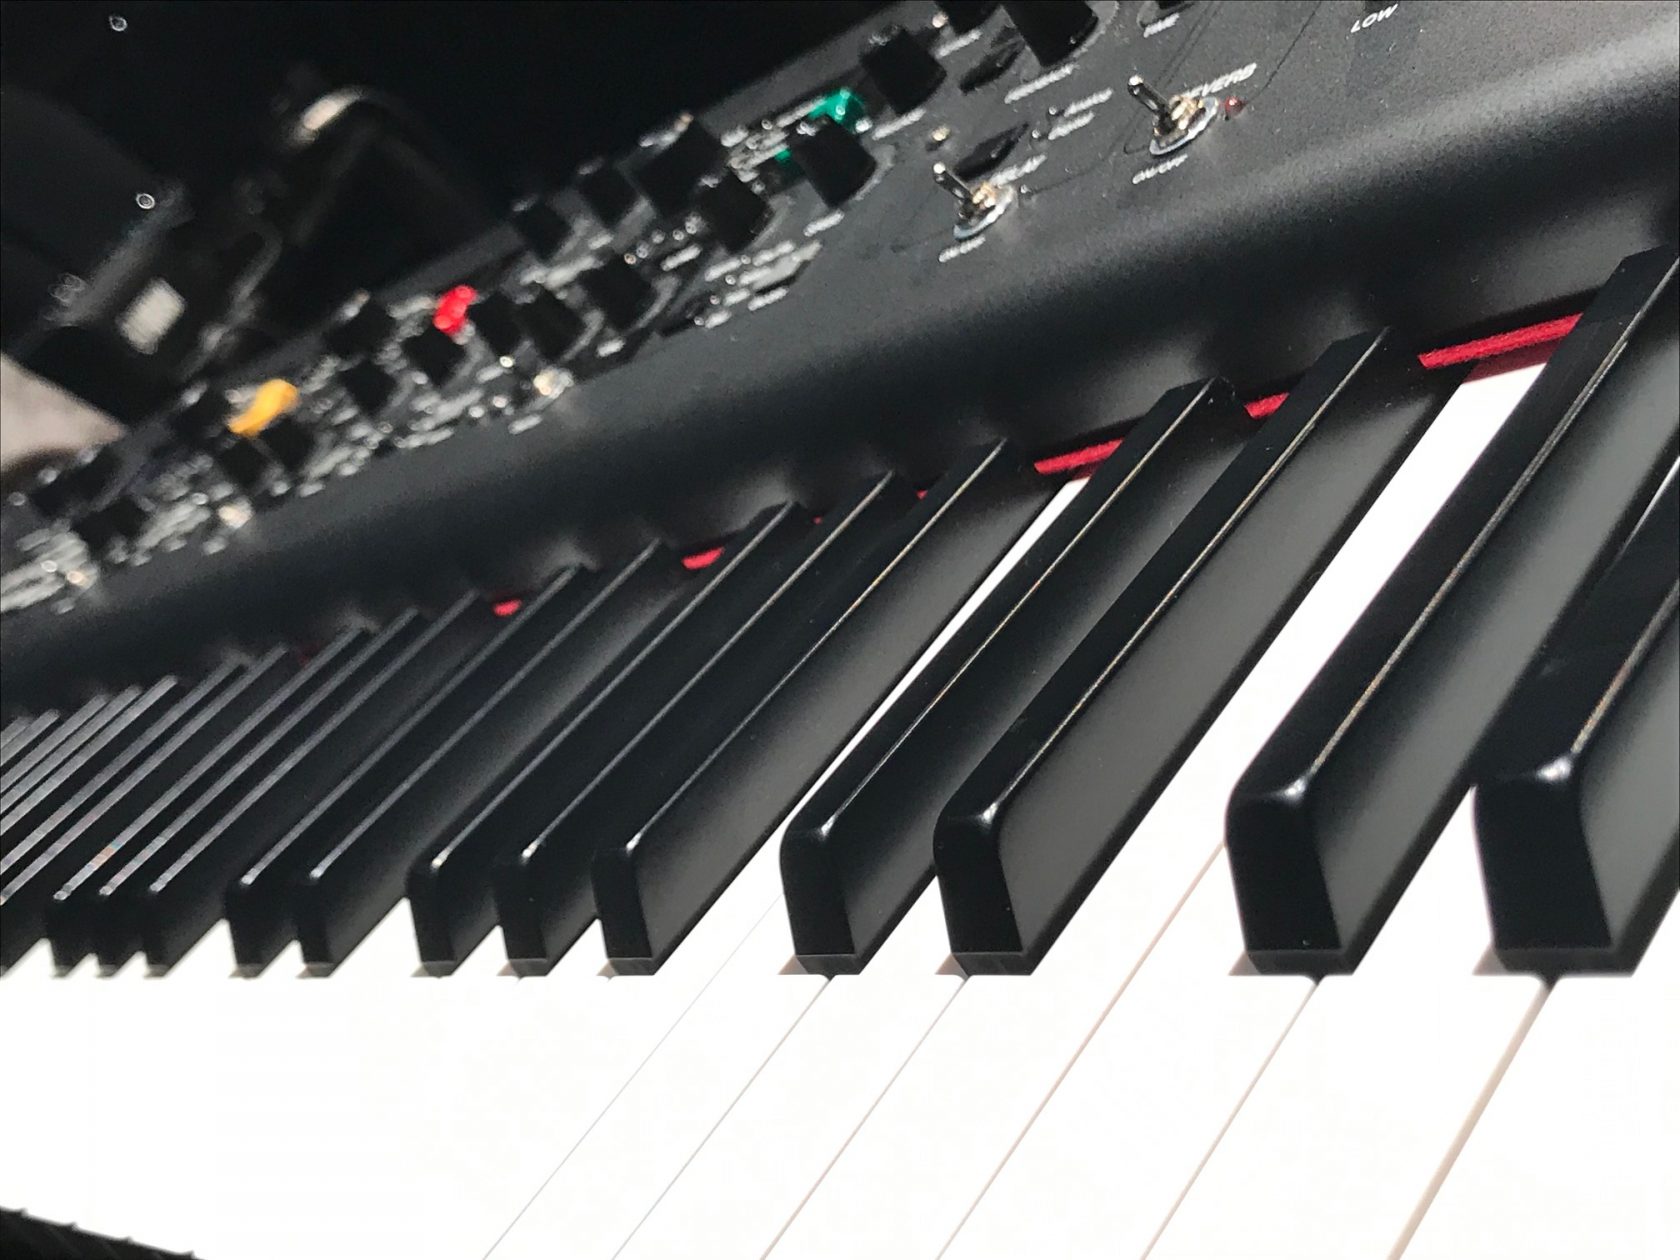 よりプロ志向のステージピアノへ Yamaha Cp Cp73 を発表 Dtmers 音楽制作者のためのwebマガジン By イシバシ楽器